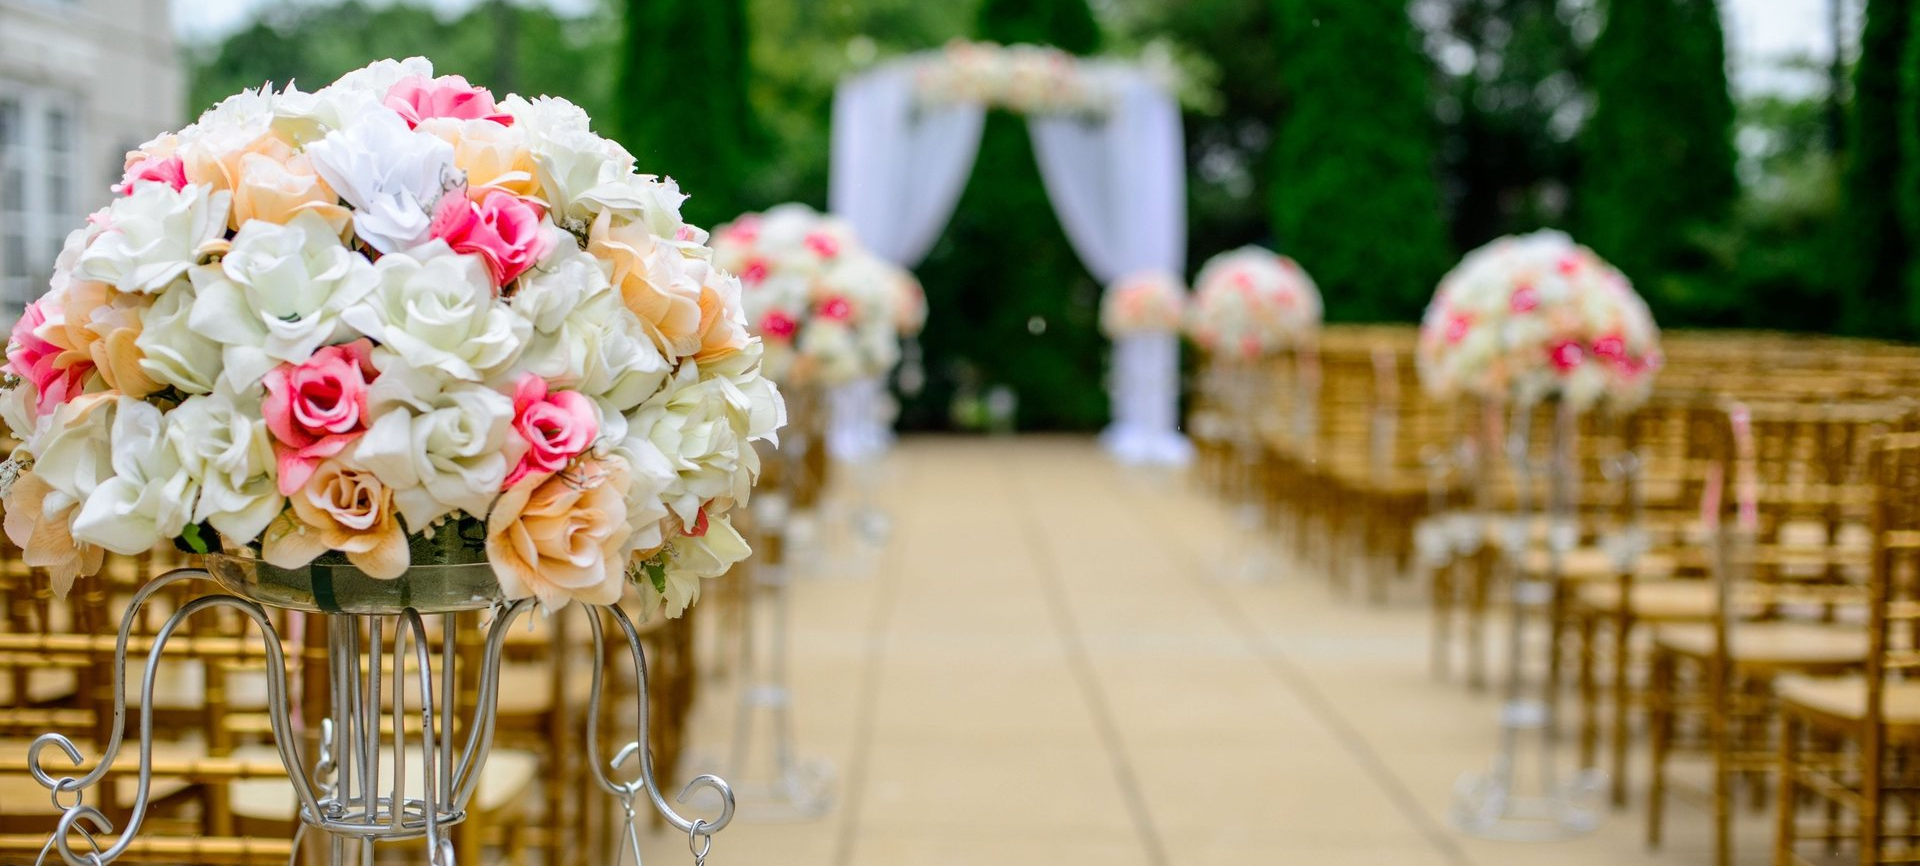 beautiful floral bouquet arrangements along wedding aisle